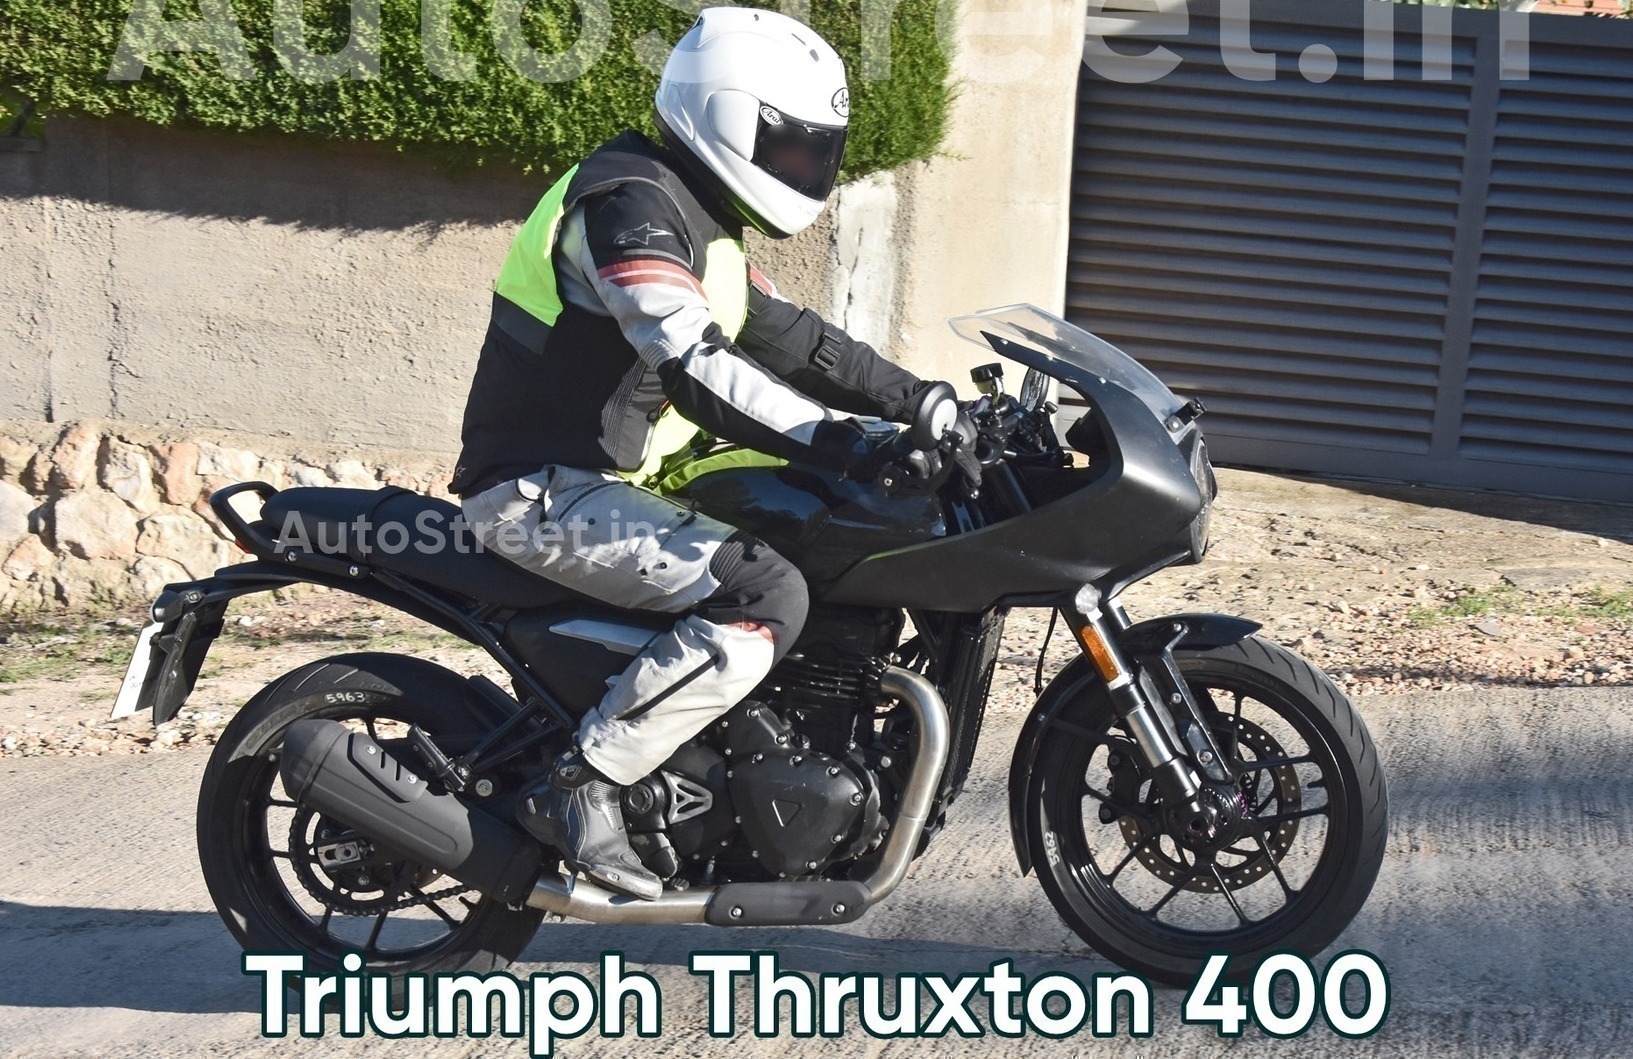 Triumph Thruxton400 spy pics 2